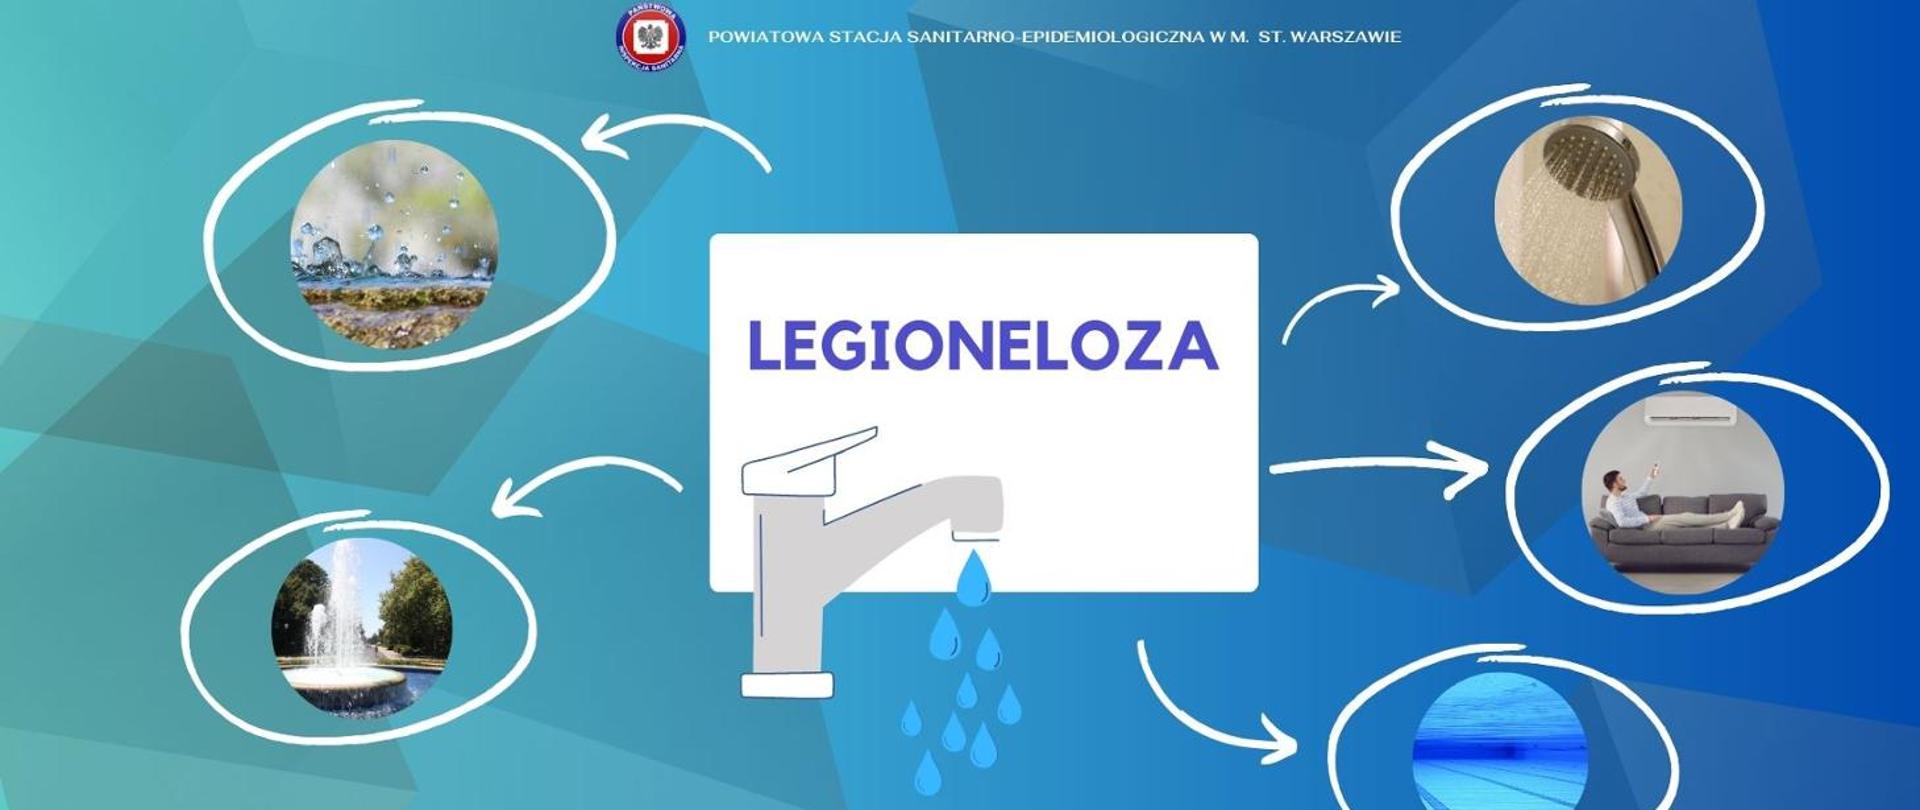 Legioneloza 1460x616